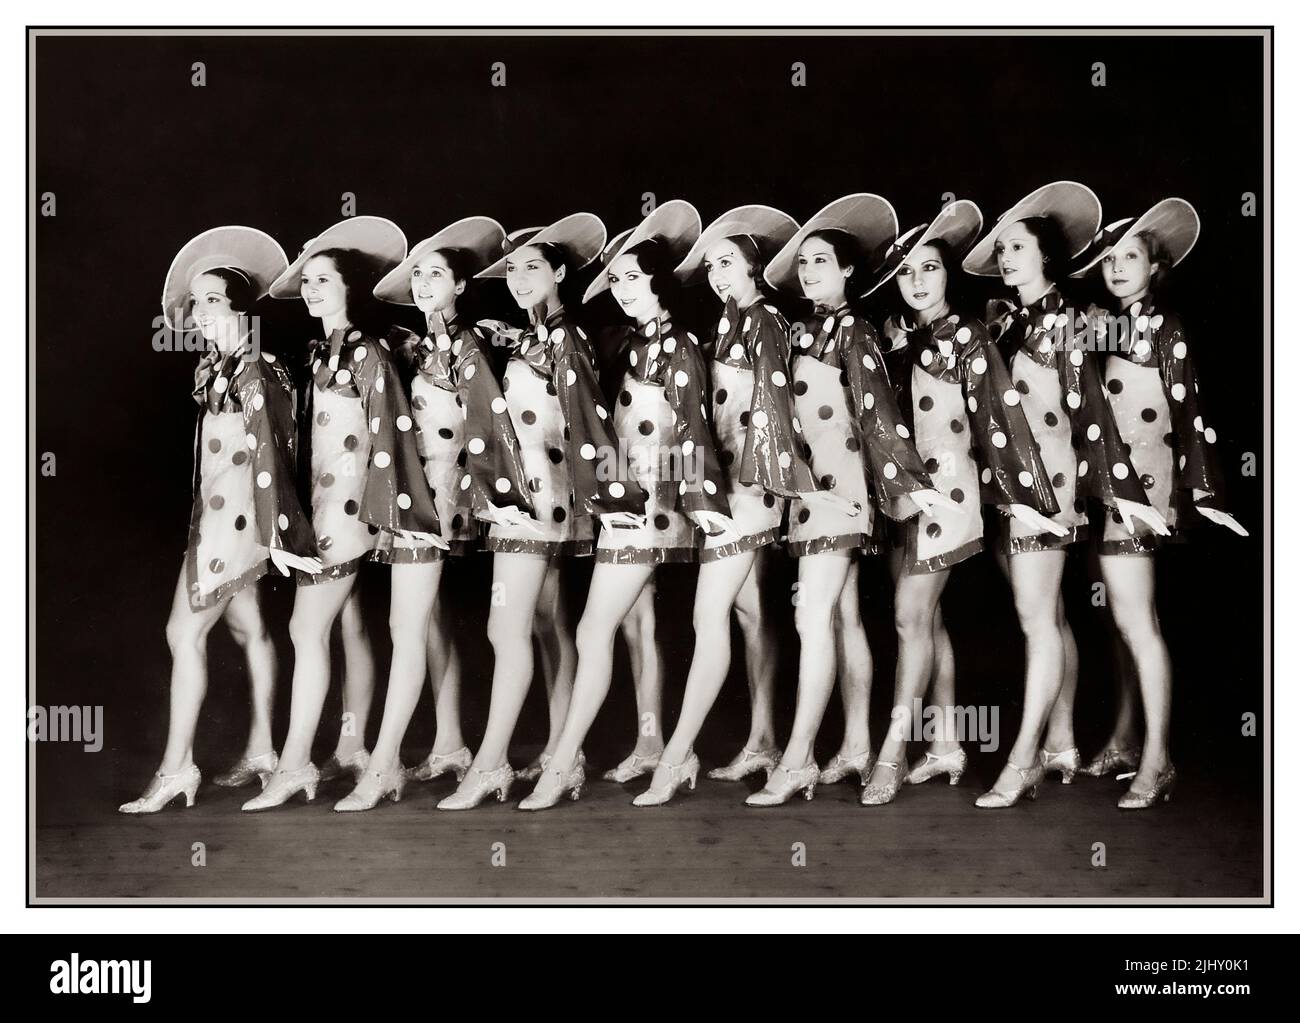 1930s Folies Bergere Showgirls posan en el escenario para una fotografía promocional. Todas las hermosas chicas seleccionadas a mano, incluida la famosa bailarina búlgara Feo Mustakova, bailando para uno de los espectáculos de cabaret Bel Epoque más importantes de París, espectáculos de baile musical. Rue Richer París Francia 1934 Foto de stock